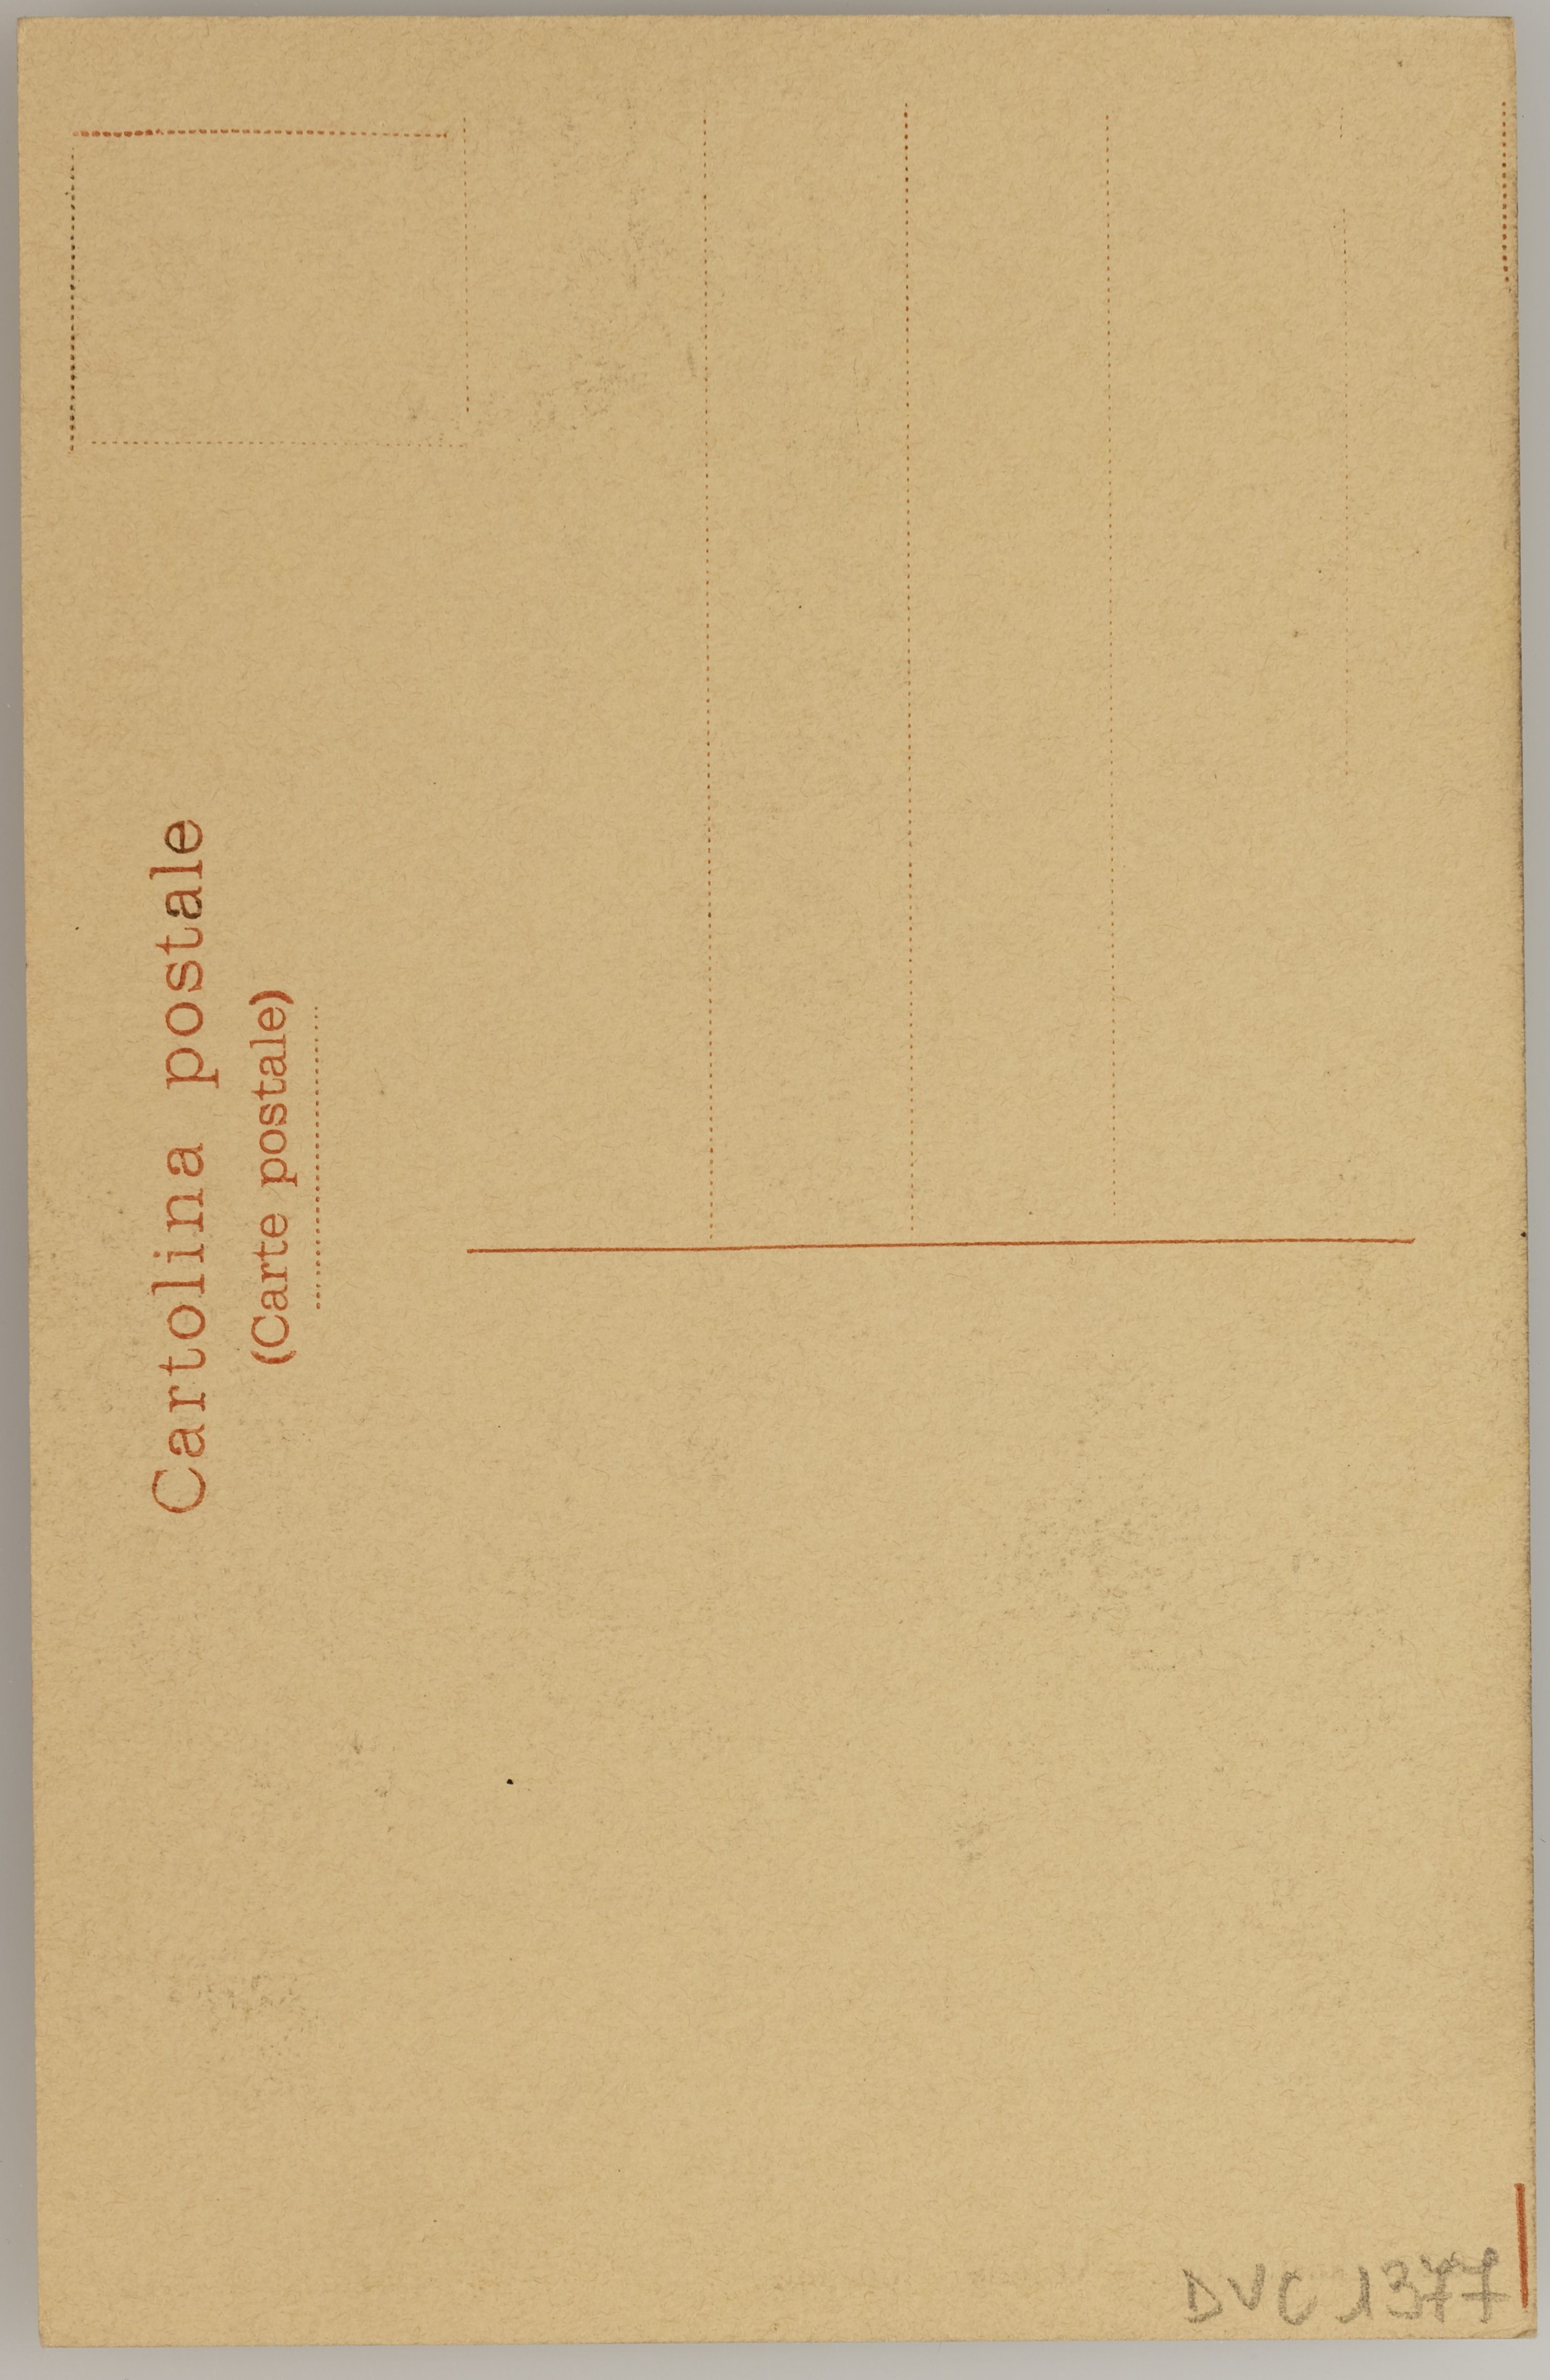 A. Tivoli, Venezia - Il Campanile di San Marco in costruzione, 1910, stampa fotomeccanica/ cartolina postale, DVC001377